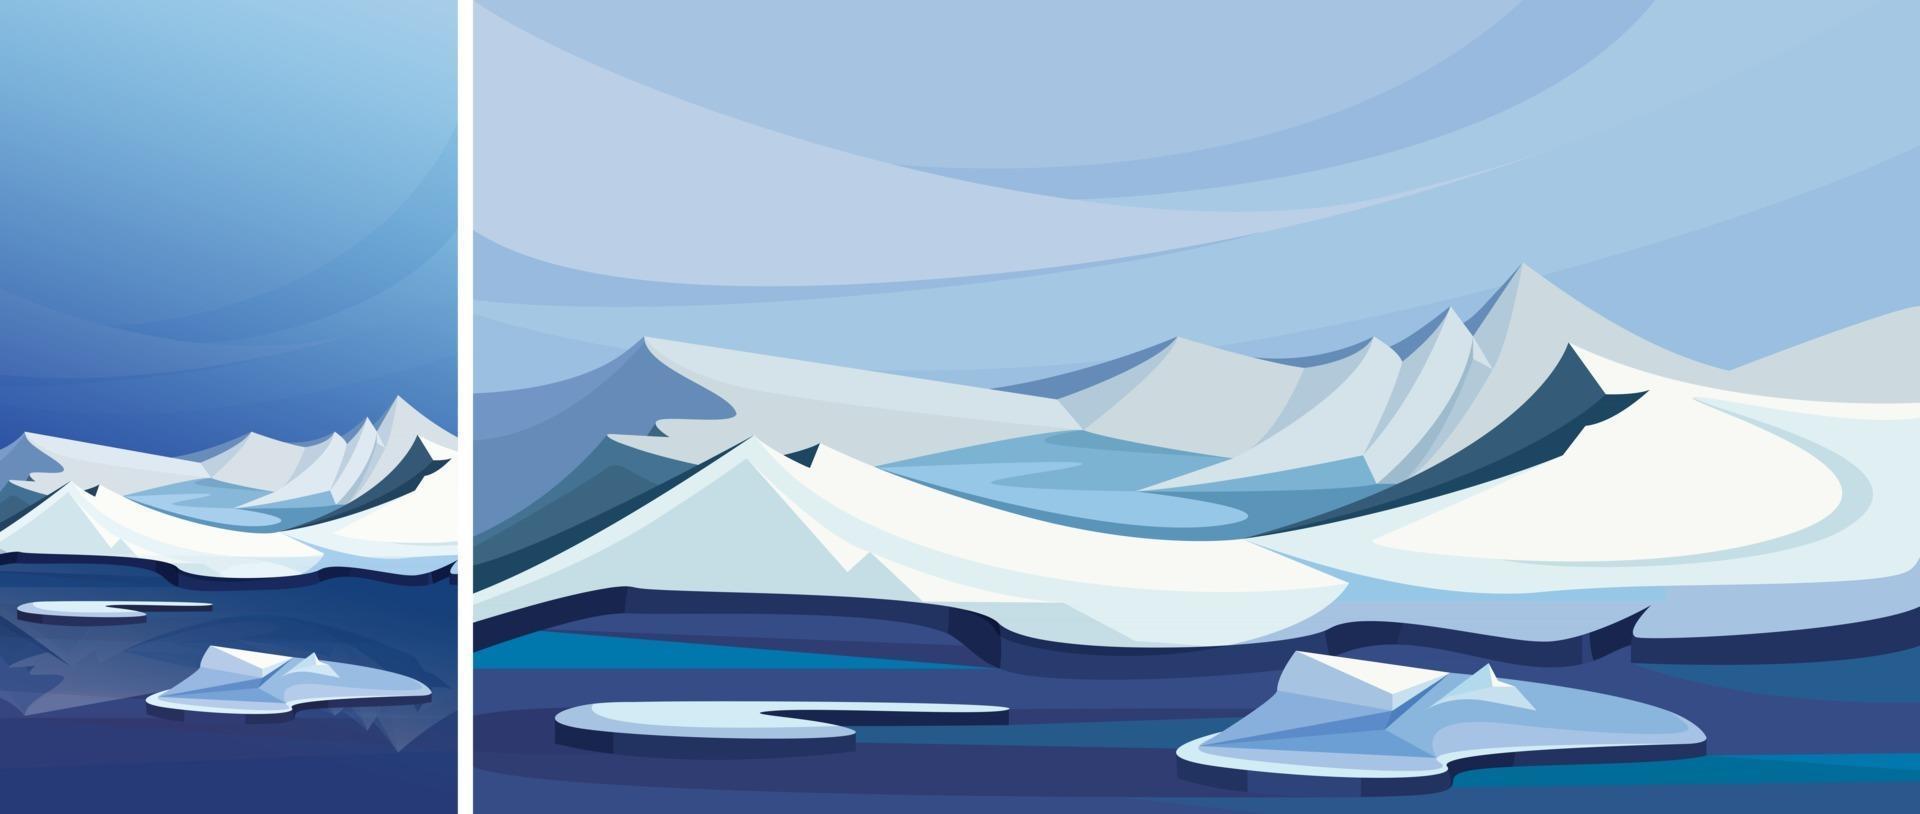 paesaggio artico con montagne di ghiaccio. scenario naturale in orientamento verticale e orizzontale. vettore